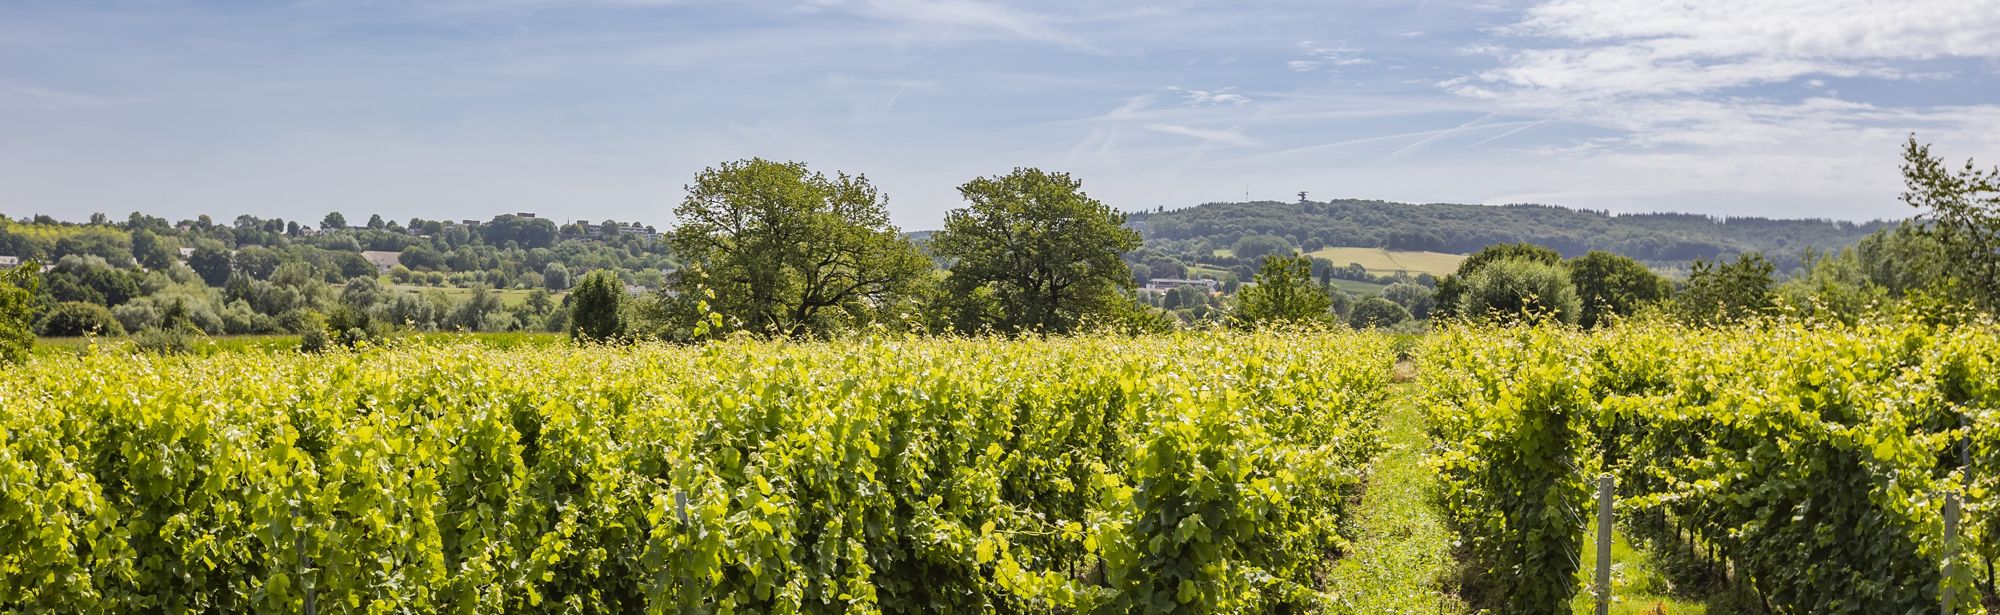 De wijngaarden van Domein Holset met uitzicht op de uitkijktoren in Vaals